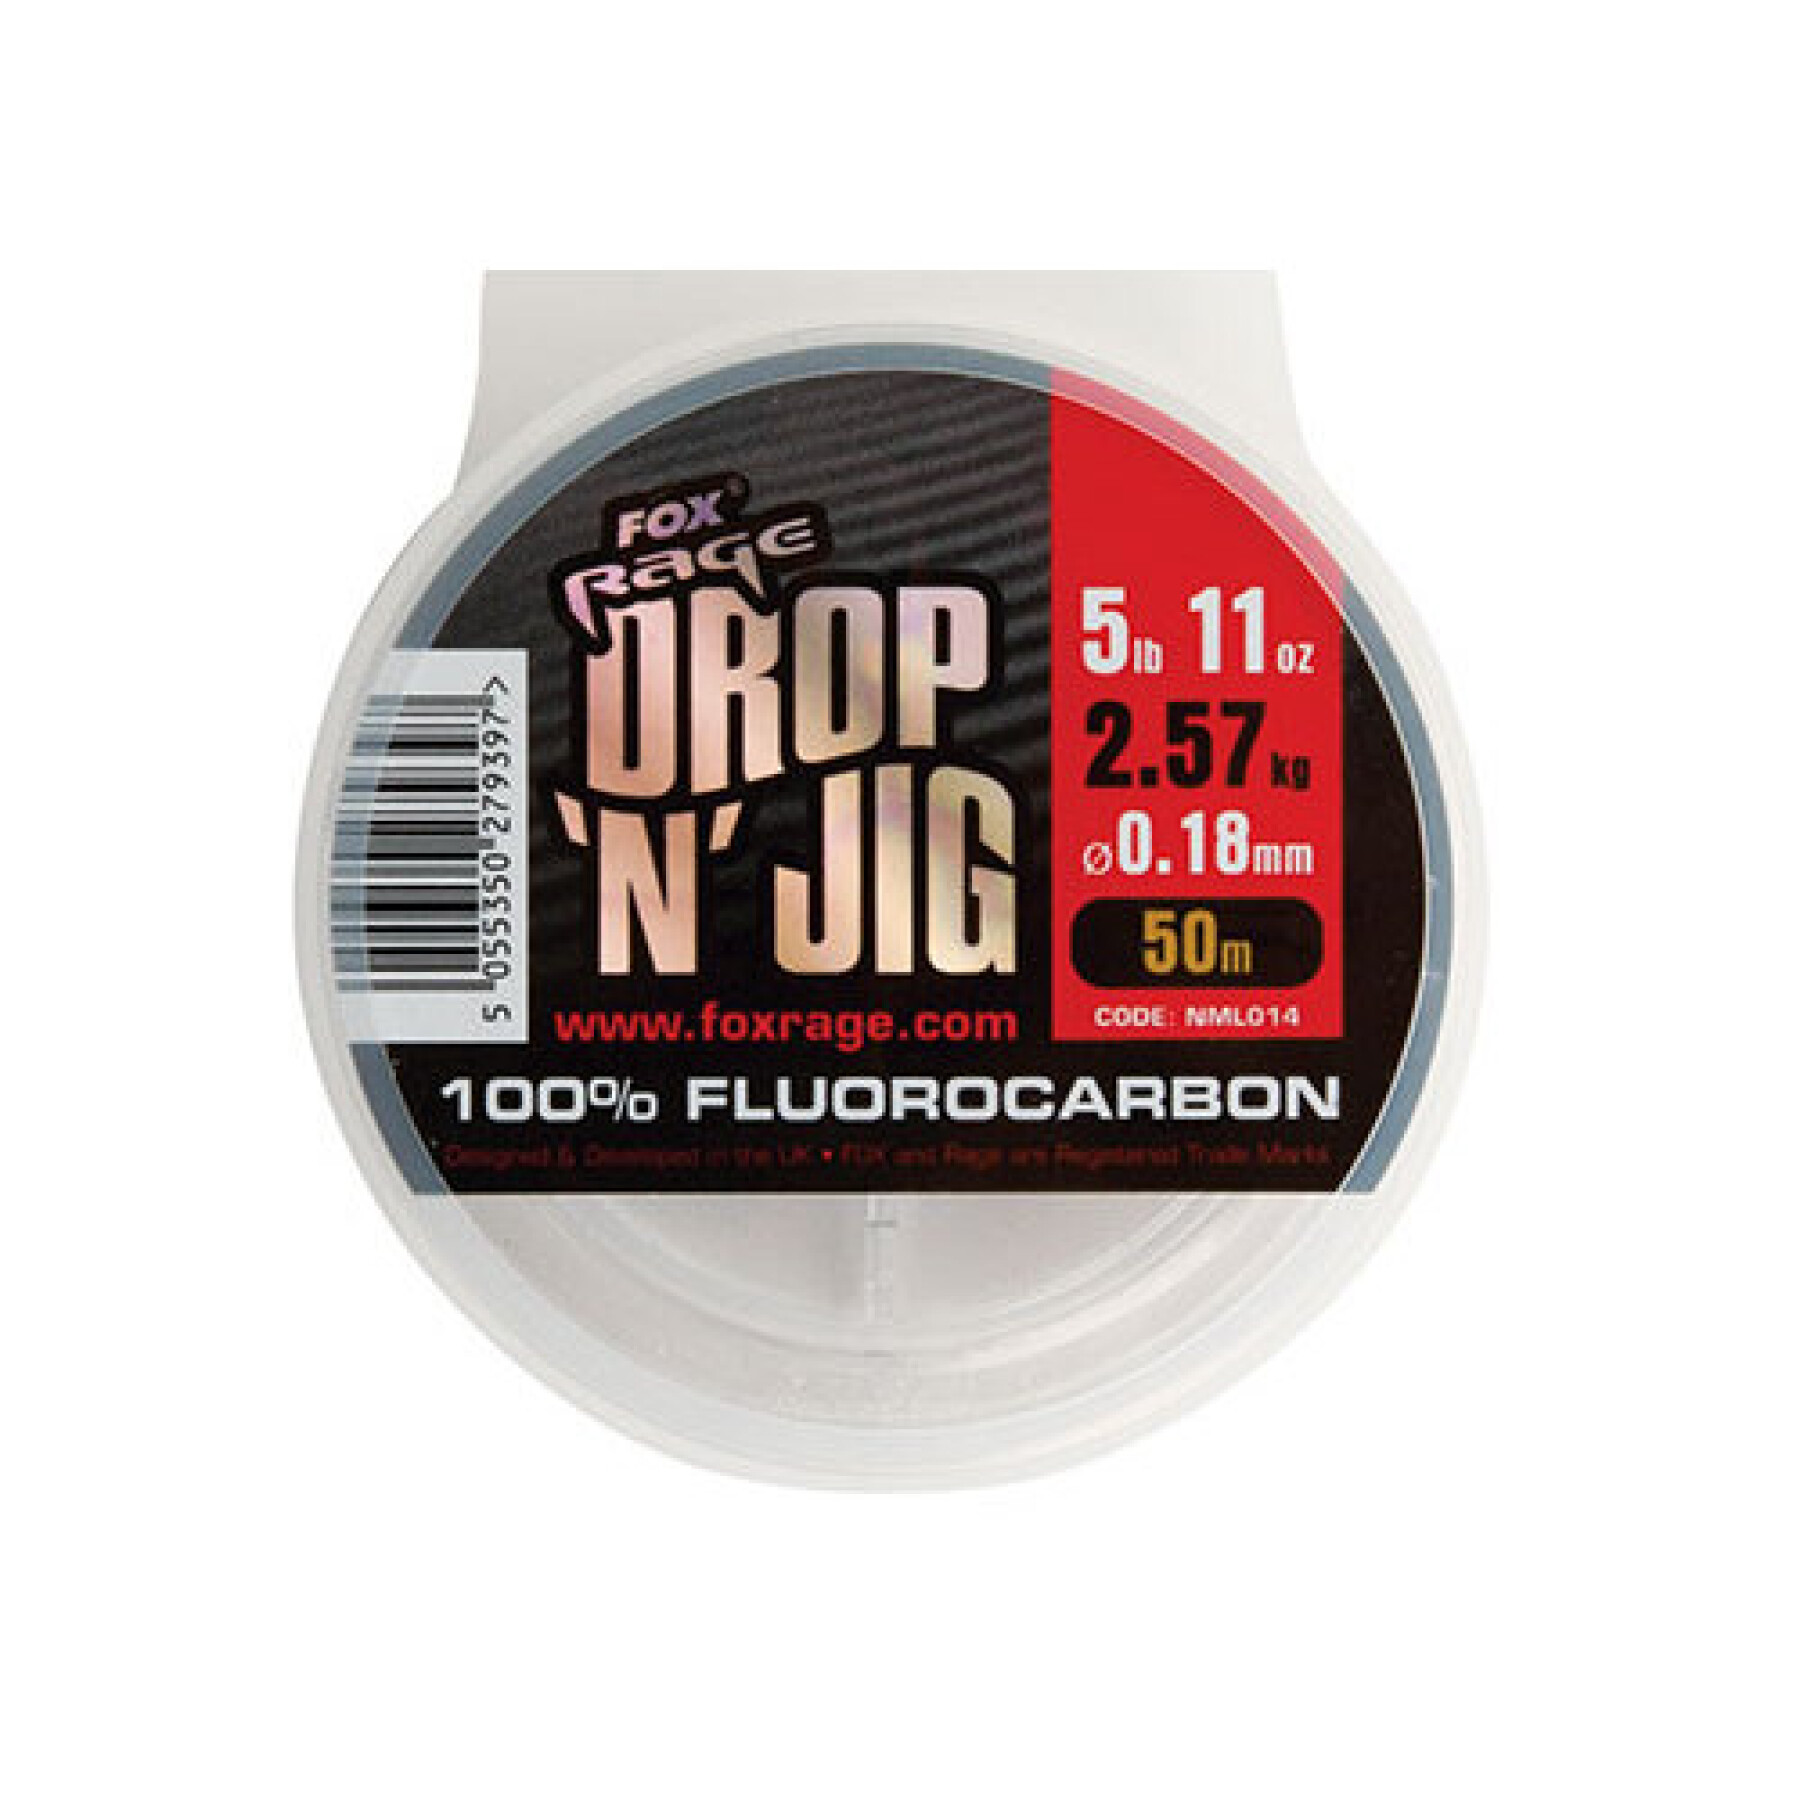 Fluorkarbon Fox Rage drop & jig 4.25kg / 9.37lb x 50m